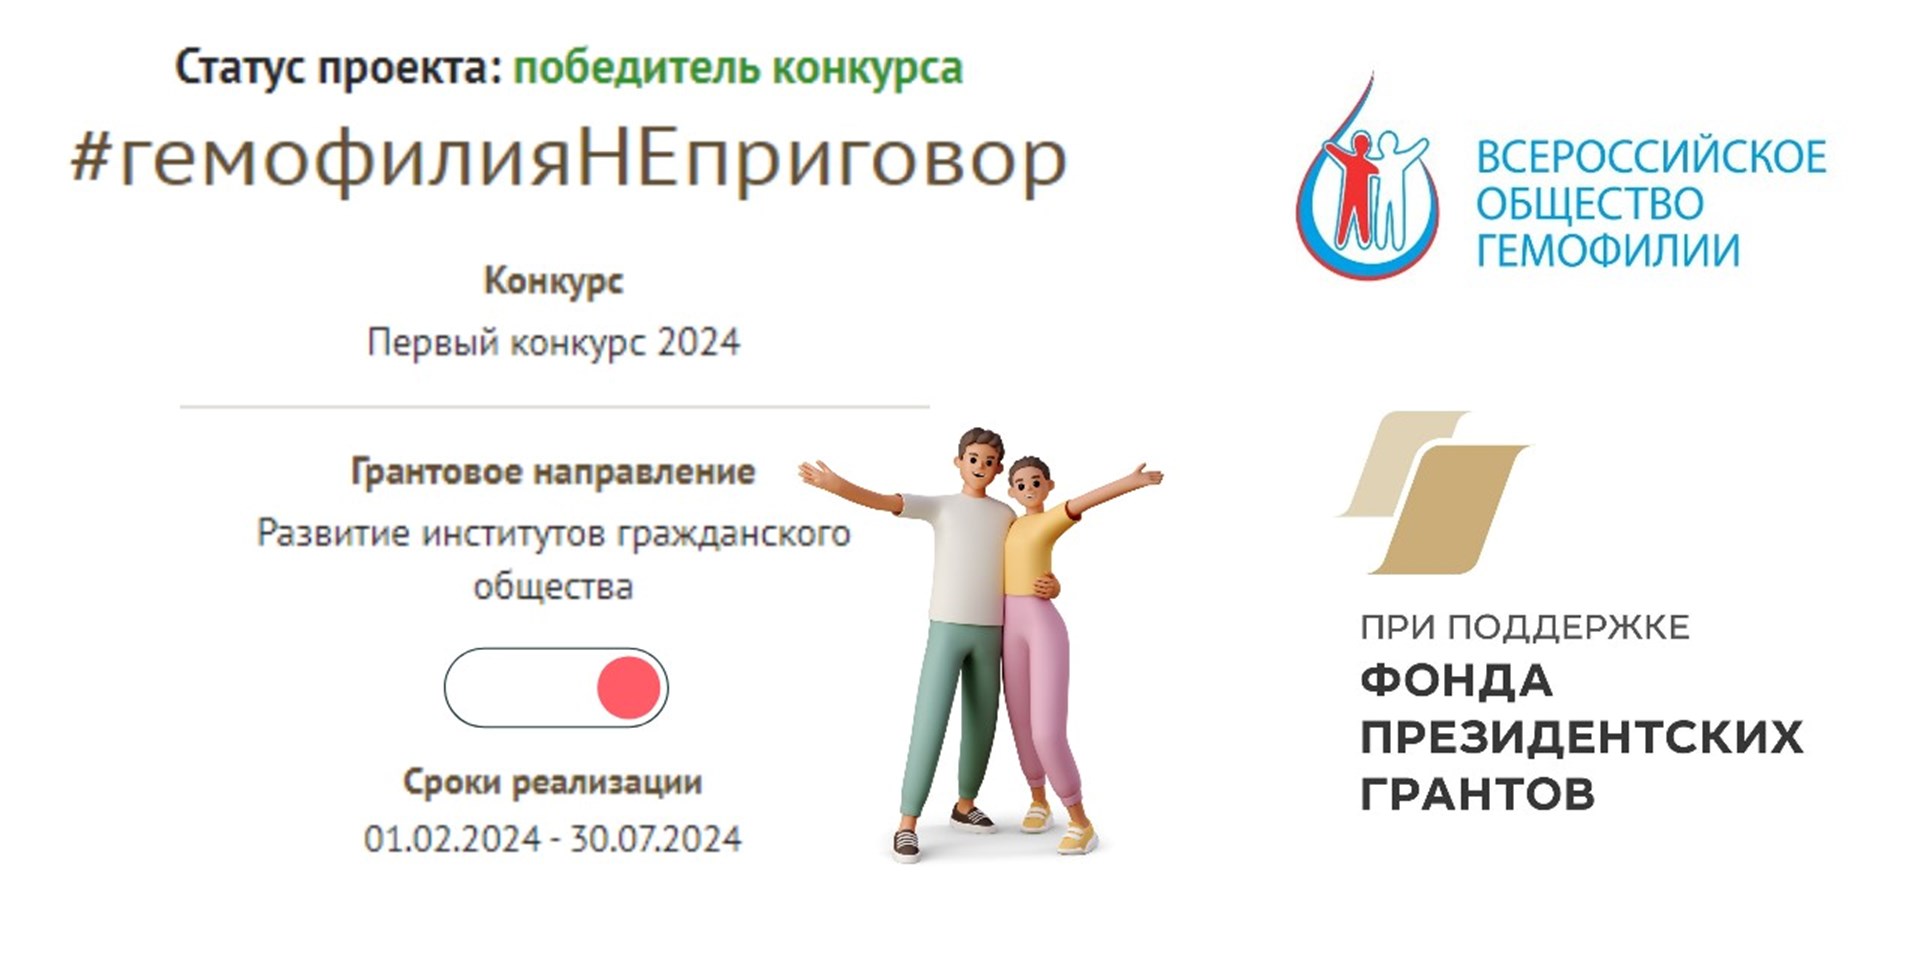 Проект Всероссийского общества гемофилии получил поддержку Фонда Президентских грантов